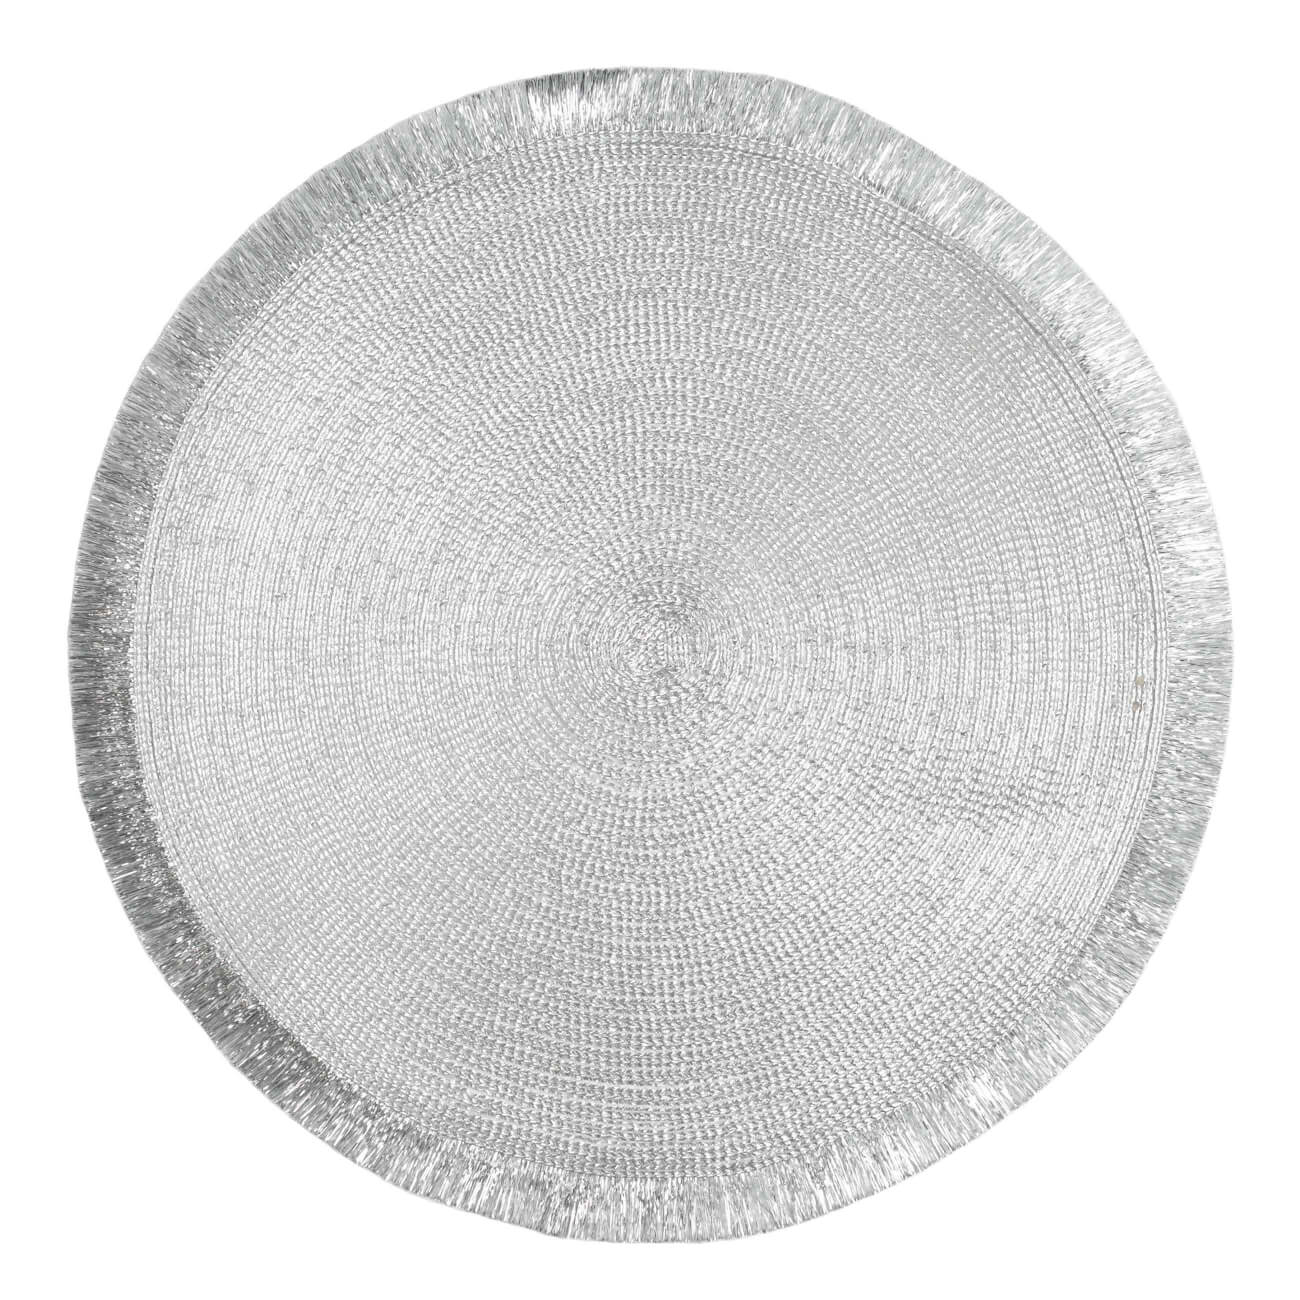 Салфетка под приборы, 38 см, с бахромой, полиэстер, круглая, серебристая, Rotary shine изображение № 1